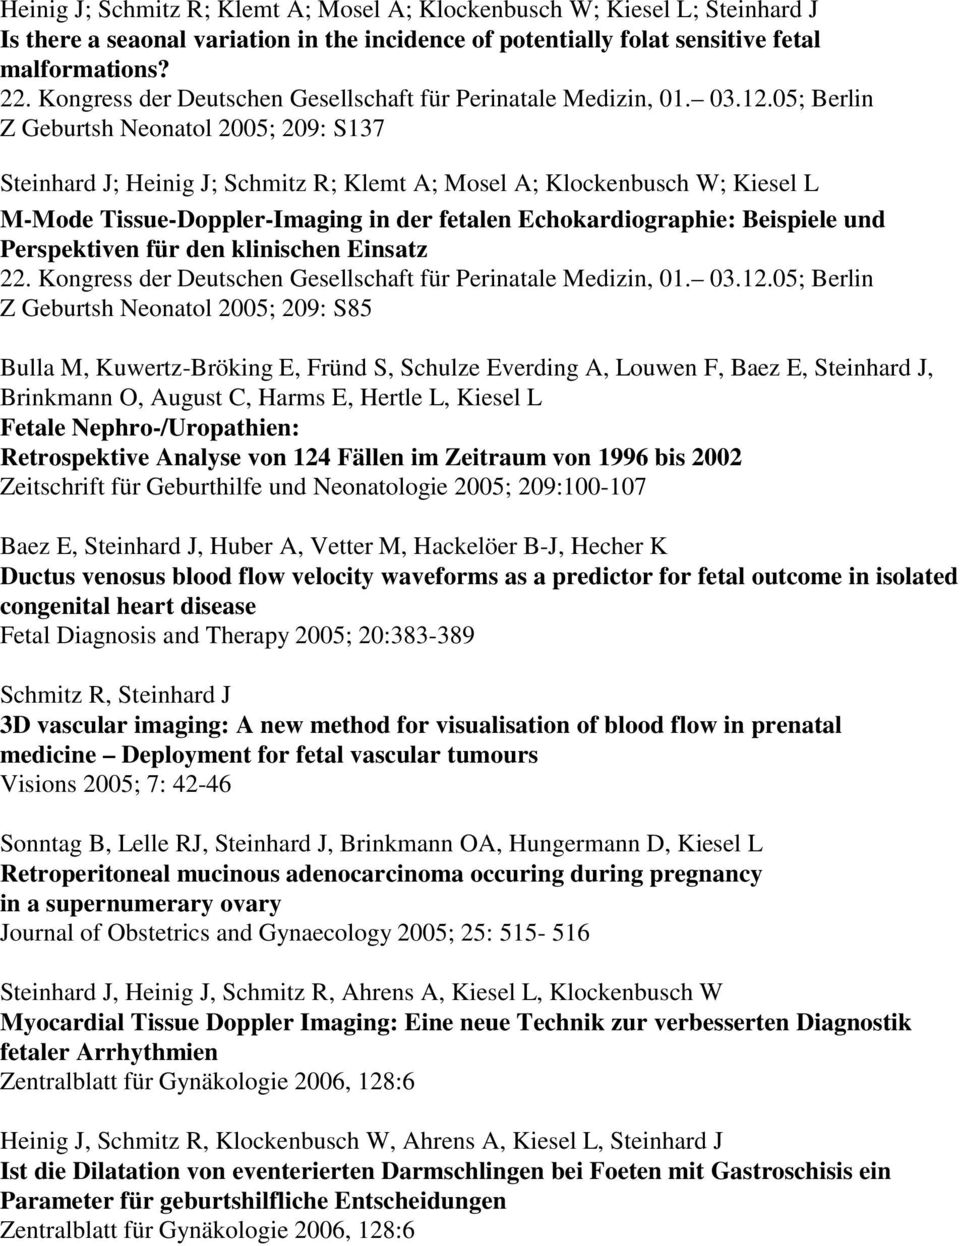 05; Berlin Z Geburtsh Neonatol 2005; 209: S137 ; Heinig J; Schmitz R; Klemt A; Mosel A; Klockenbusch W; Kiesel L M-Mode Tissue-Doppler-Imaging in der fetalen Echokardiographie: Beispiele und